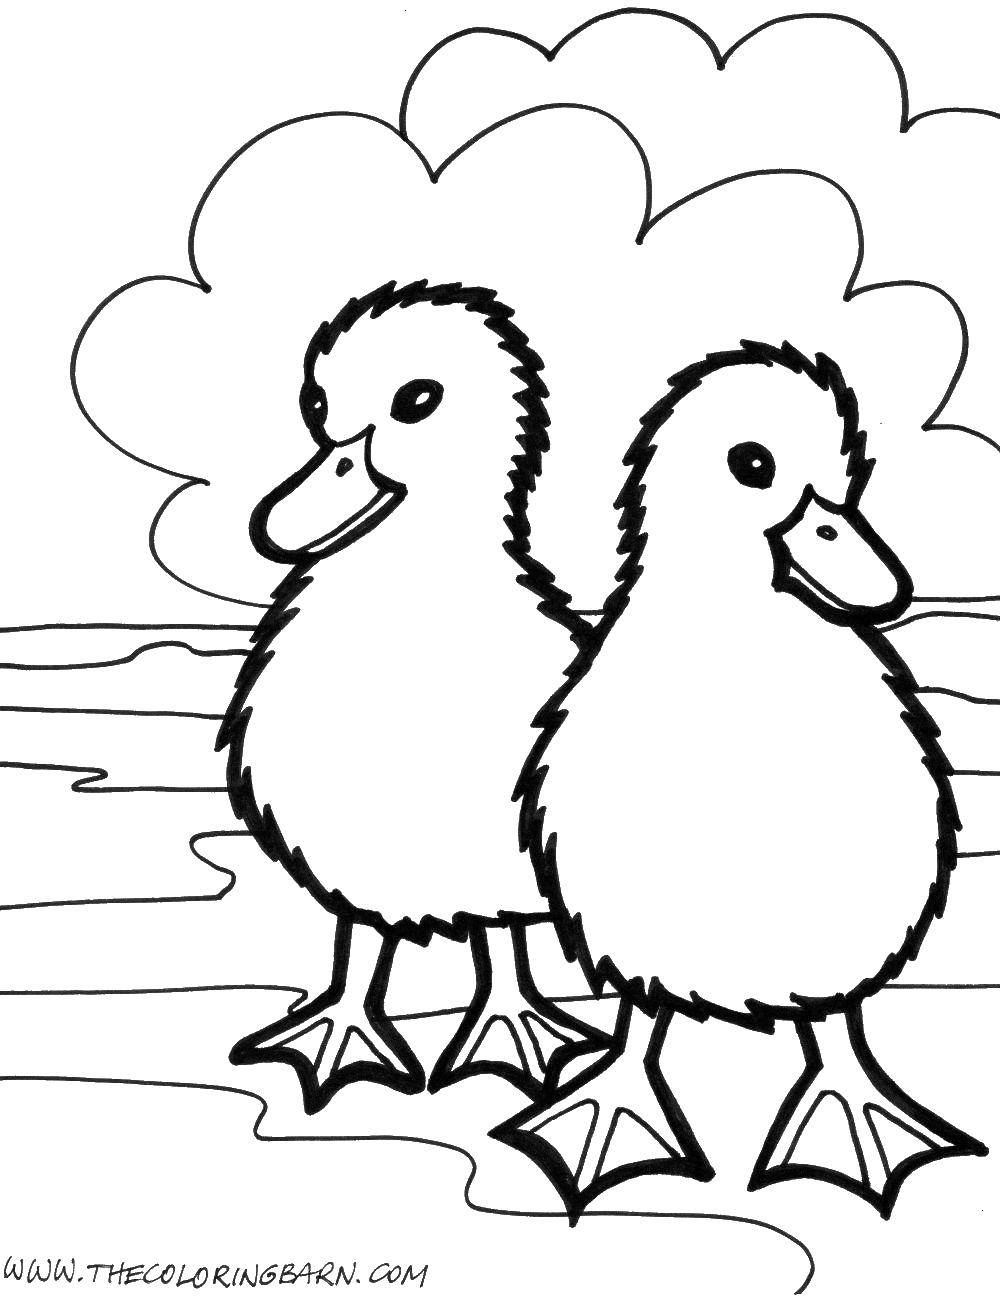 Название: Раскраска Два пушистых цыпленка. Категория: птицы. Теги: птицы, цыплята.